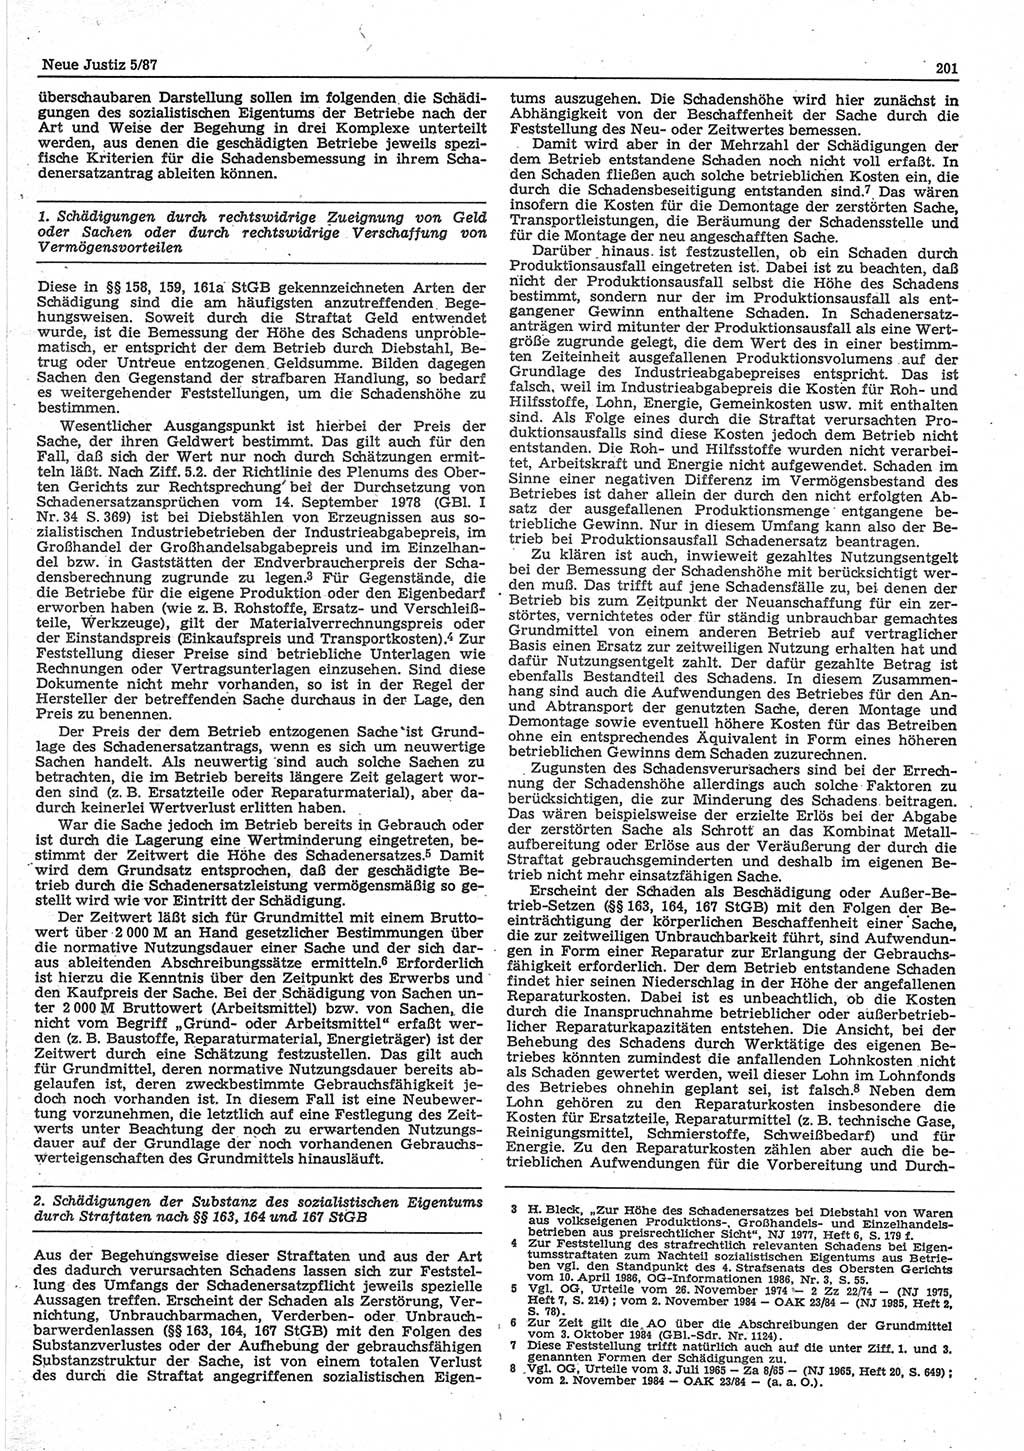 Neue Justiz (NJ), Zeitschrift für sozialistisches Recht und Gesetzlichkeit [Deutsche Demokratische Republik (DDR)], 41. Jahrgang 1987, Seite 201 (NJ DDR 1987, S. 201)